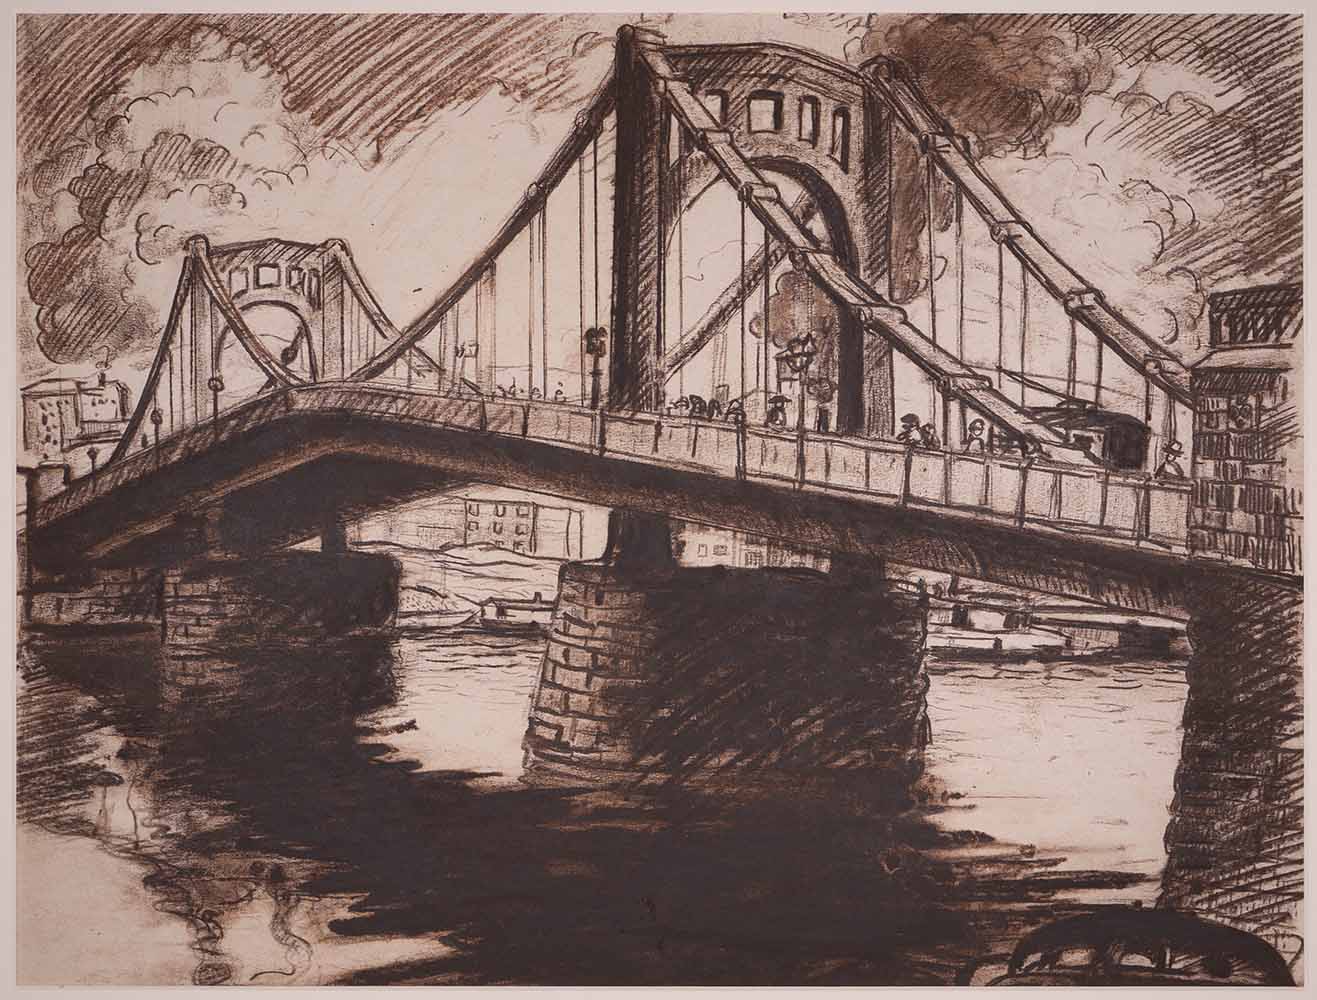 A sketch of a bridge.